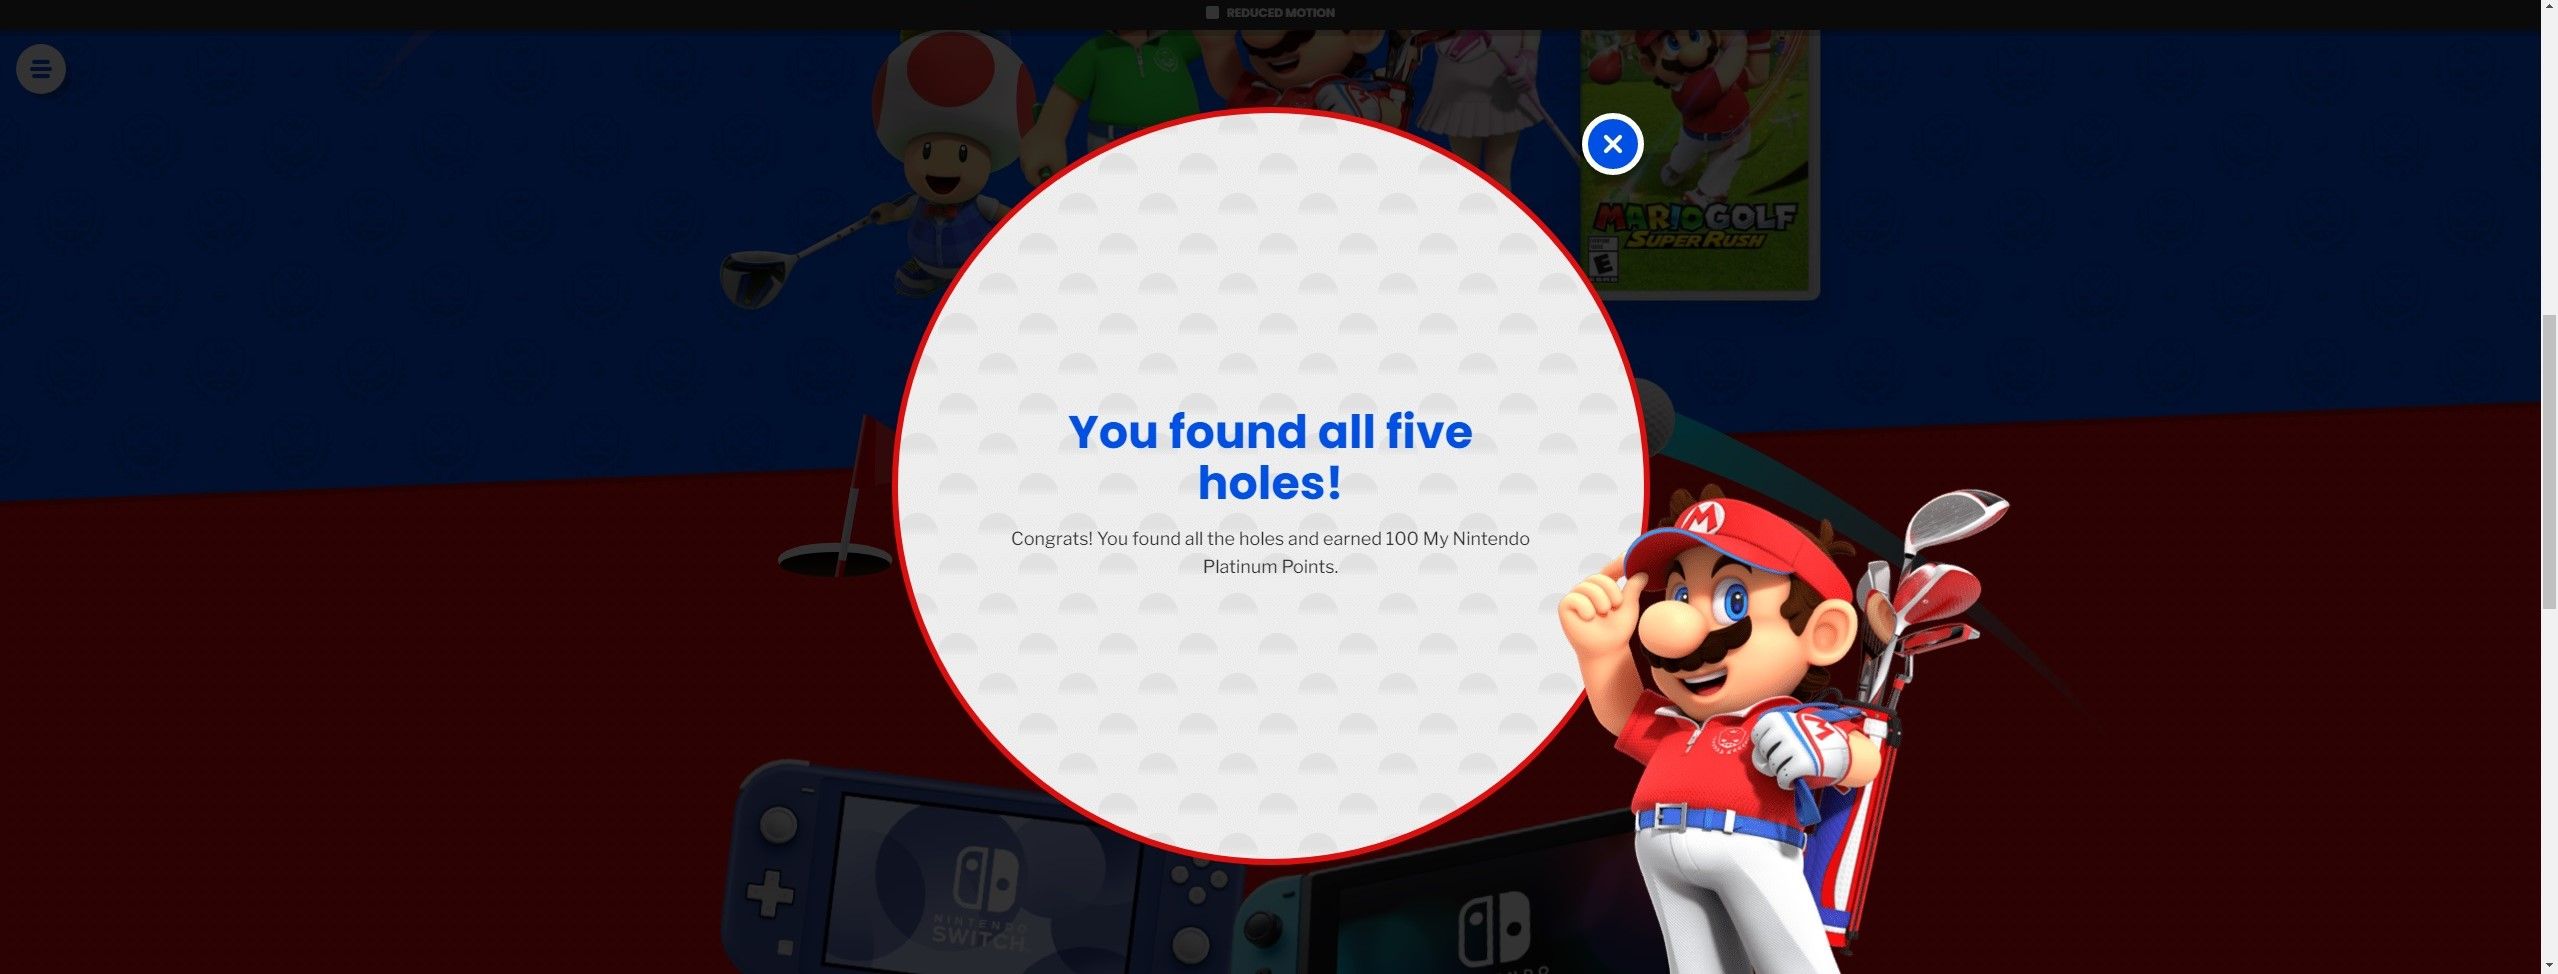 You found all five holes Nintendo Mario Golf achievement 